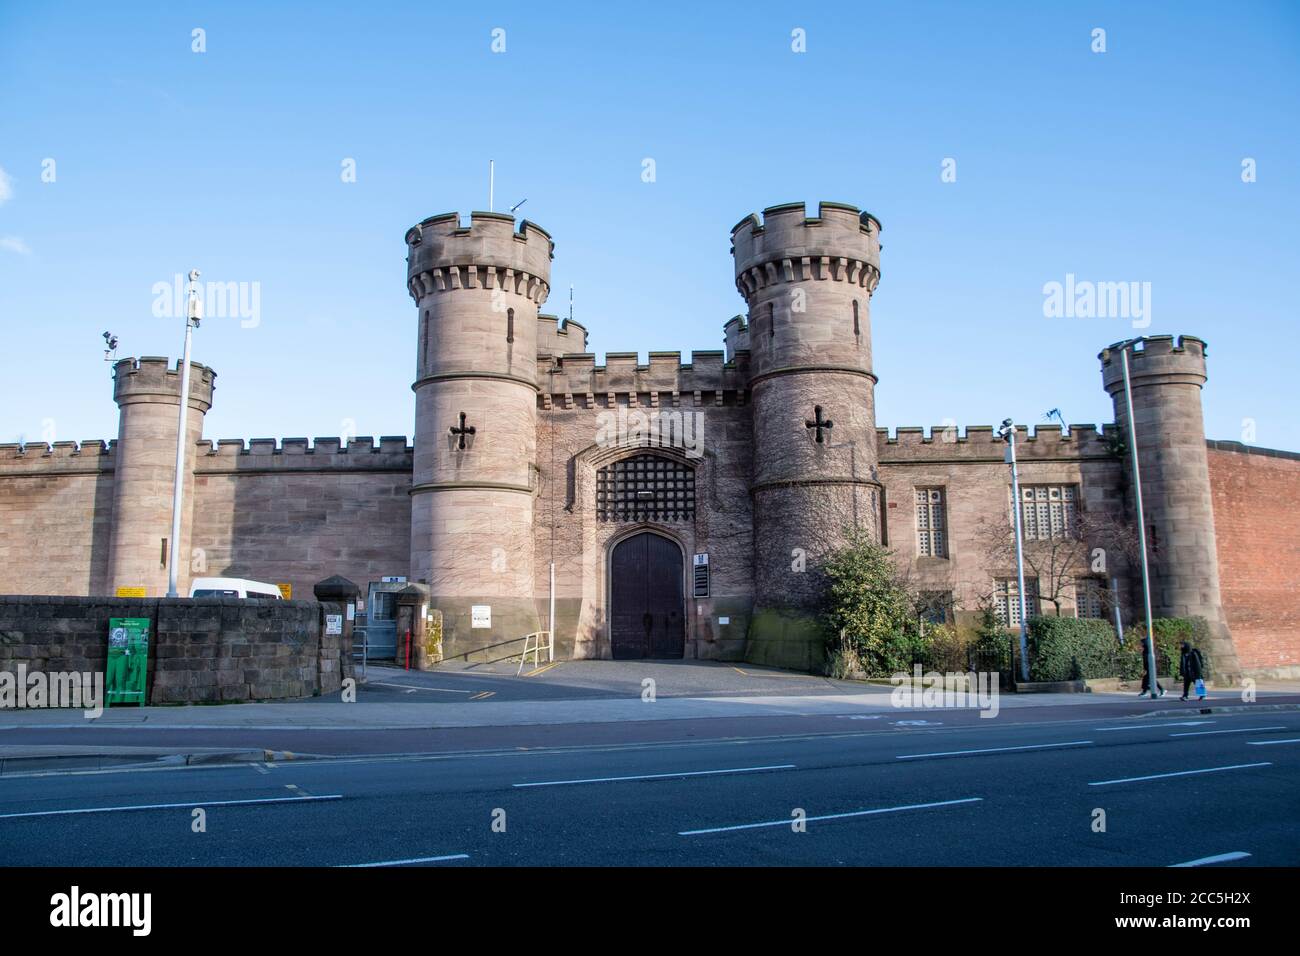 HMP Leicester Gefängnis im Zentrum der Stadt Gehäuse Insassen aus dem ganzen Land Stockfoto